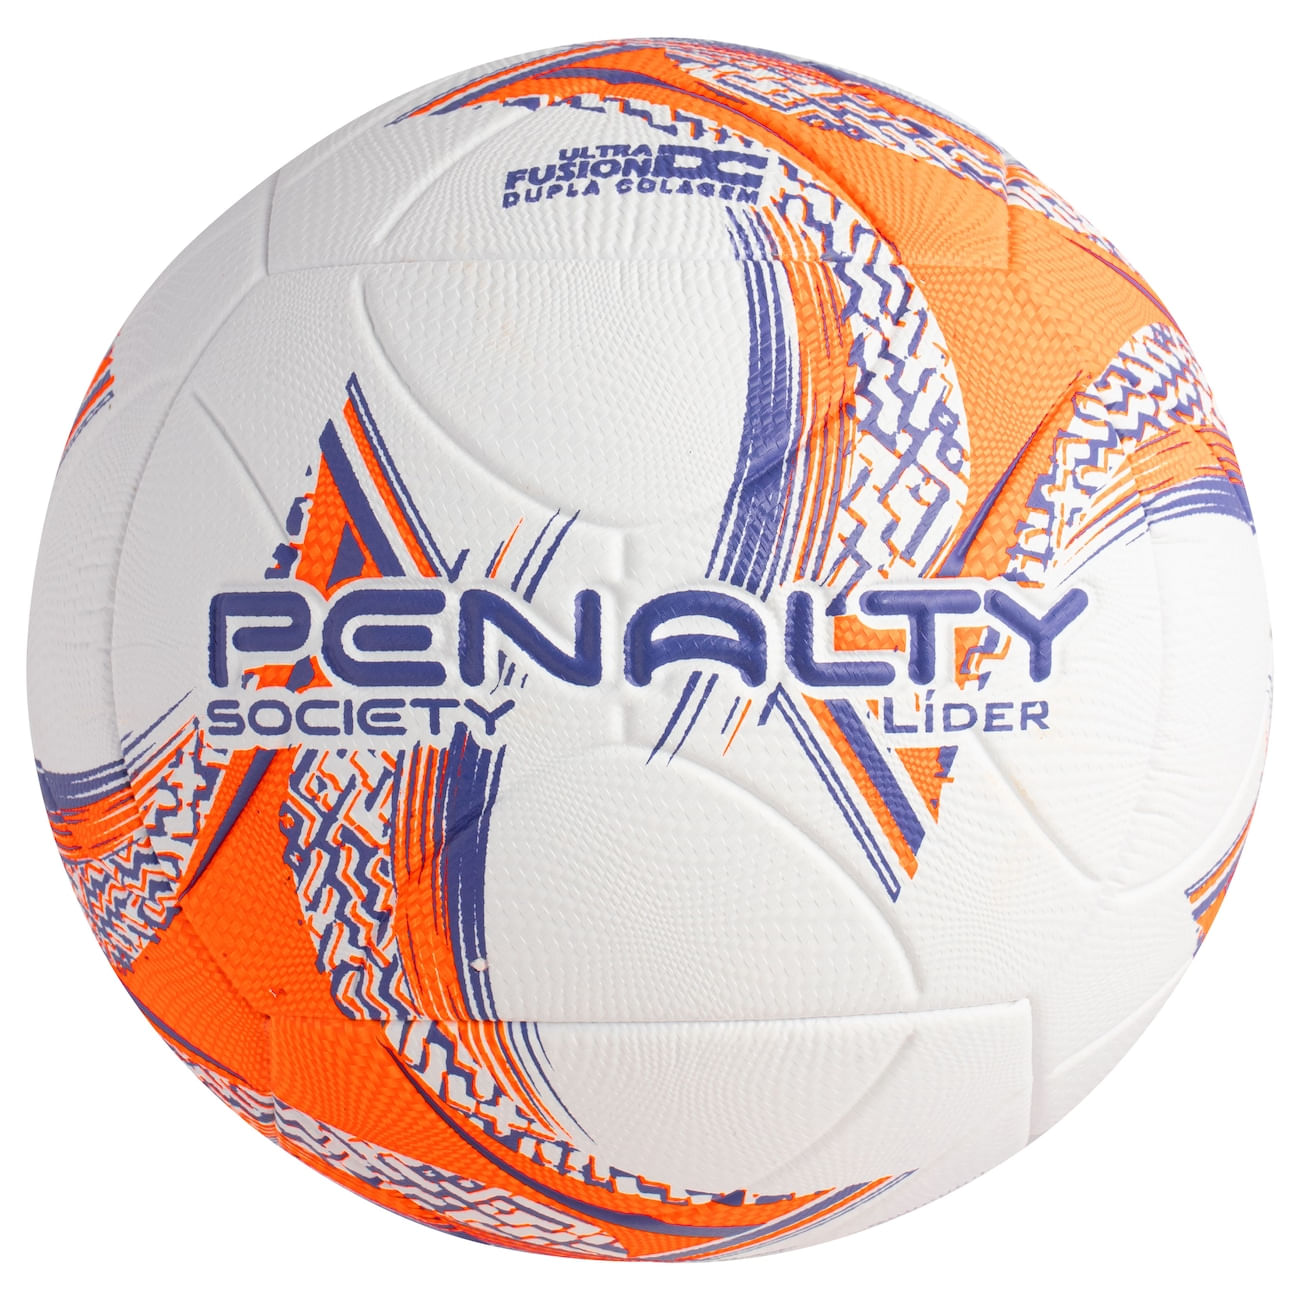 Bola Futsal Penalty Lider XXIII